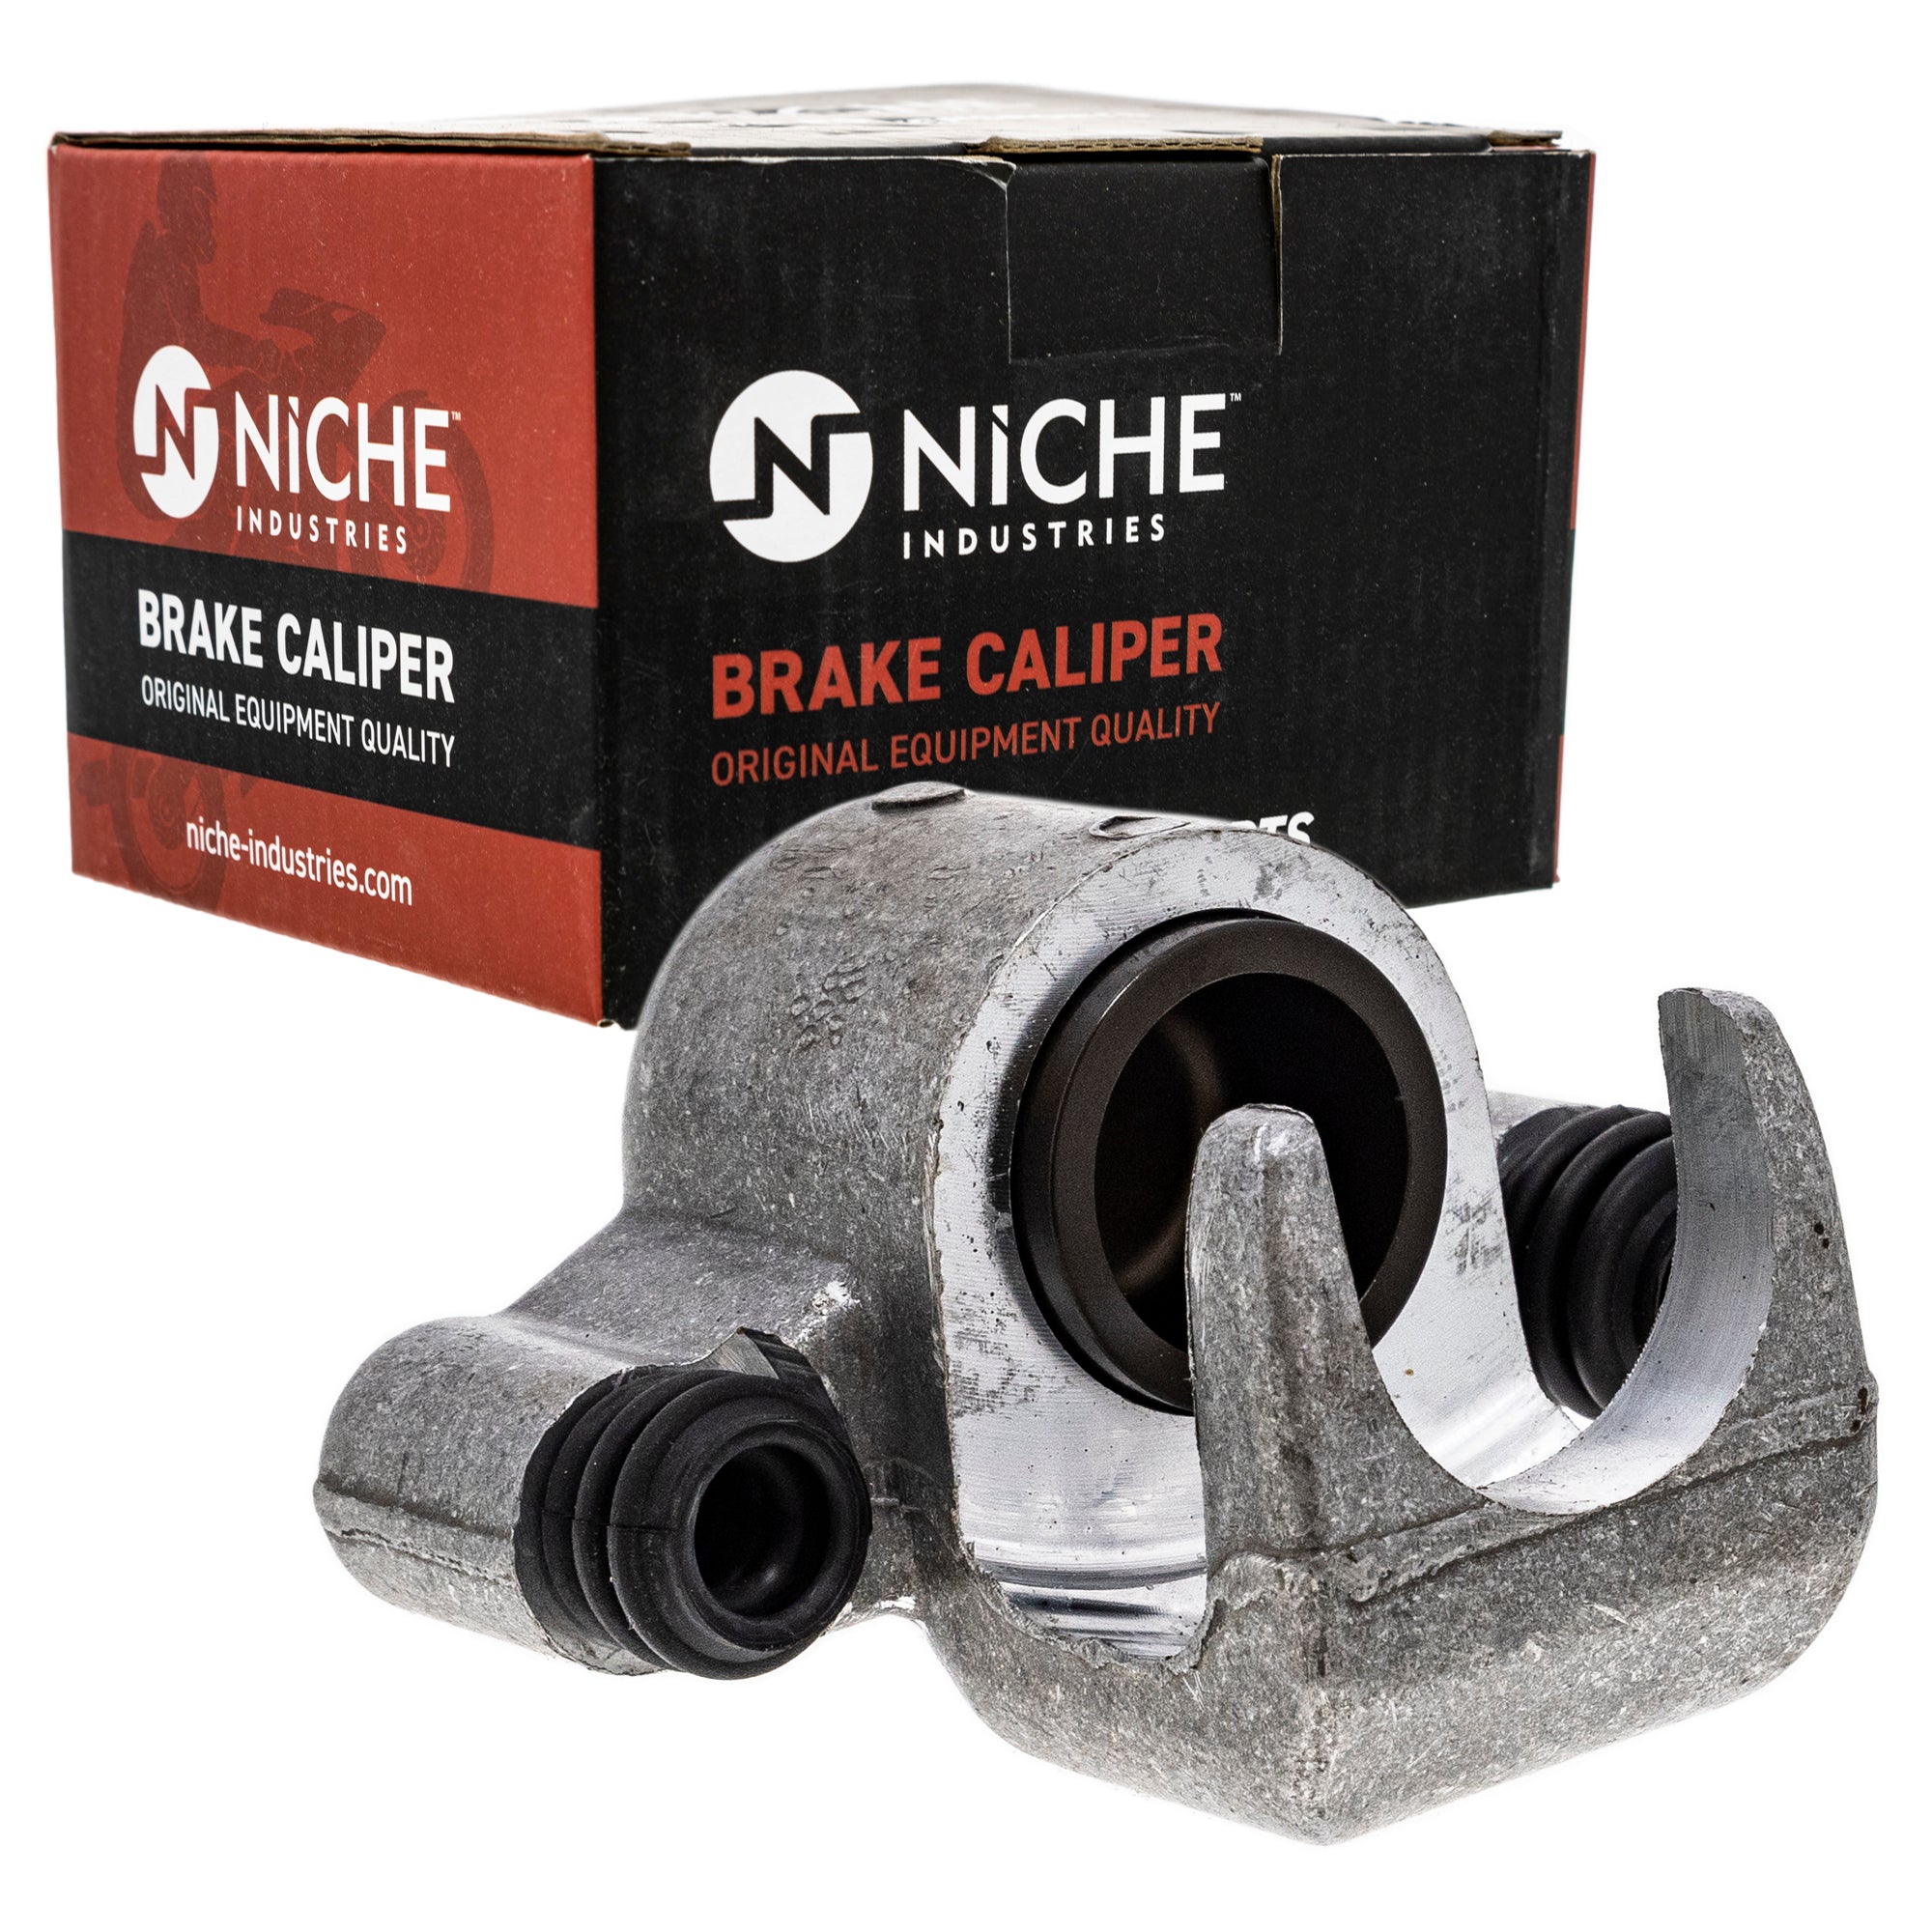 NICHE MK1001032 Brake Caliper Kit